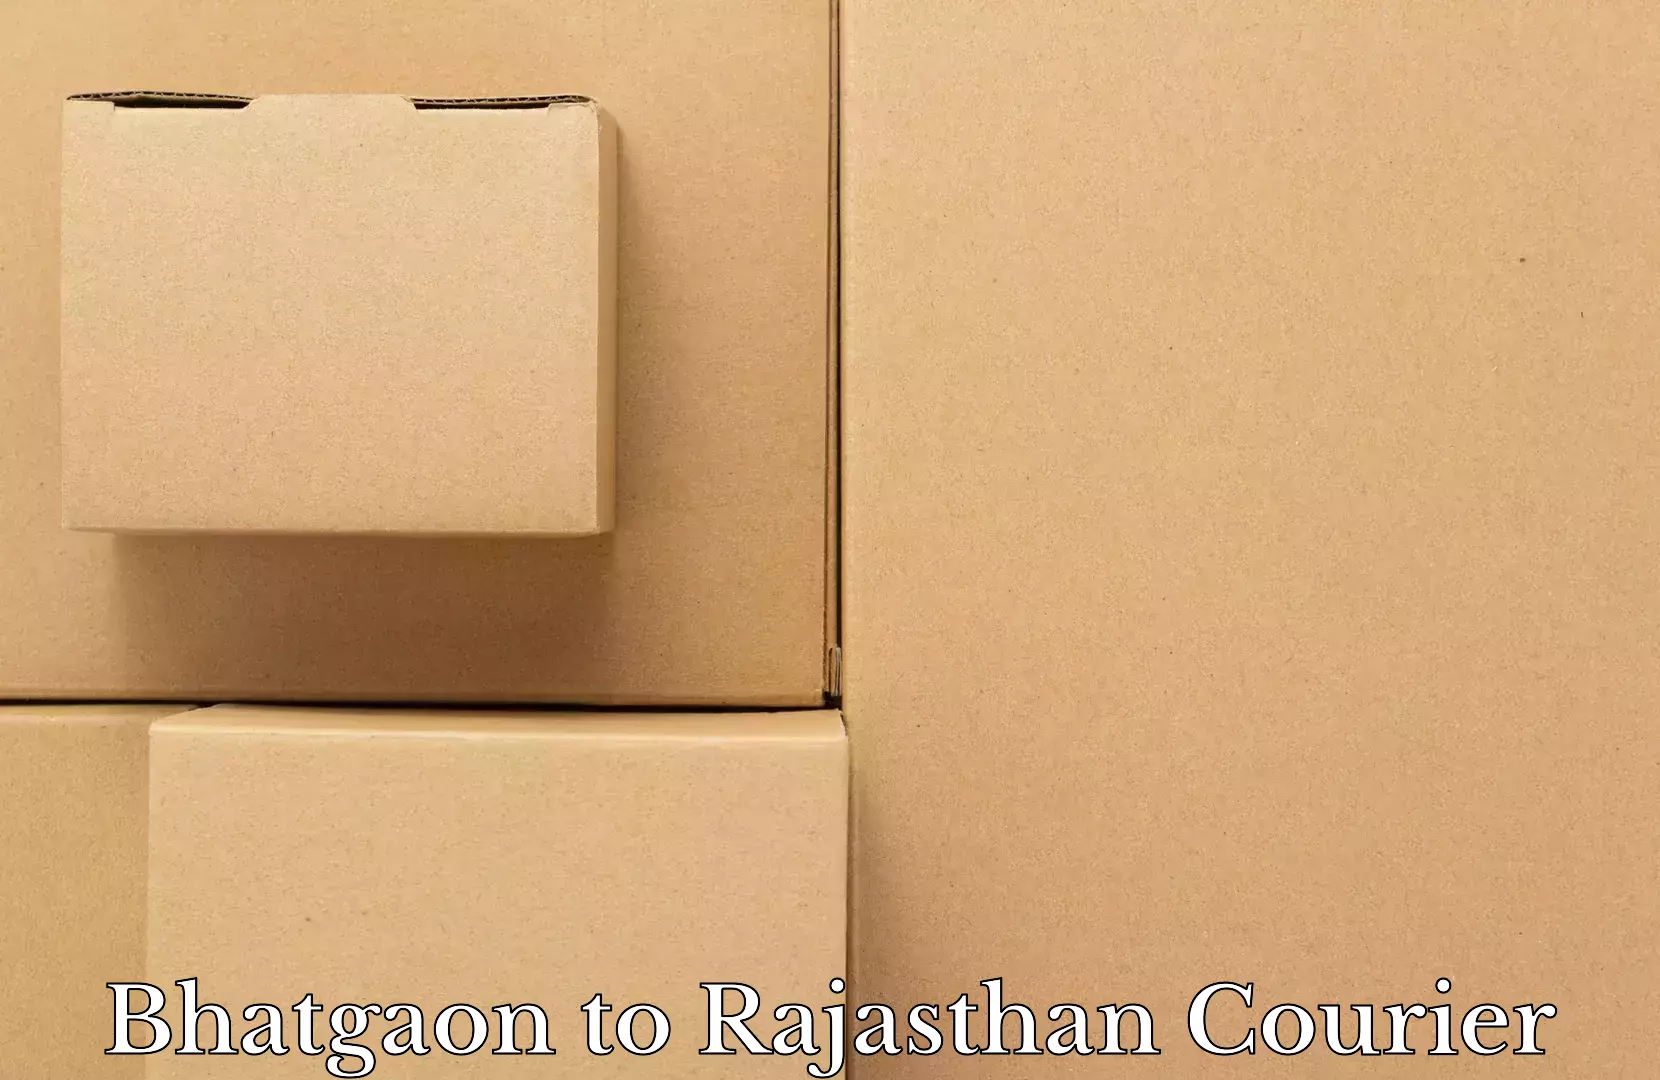 Baggage transport management Bhatgaon to Rajasthan